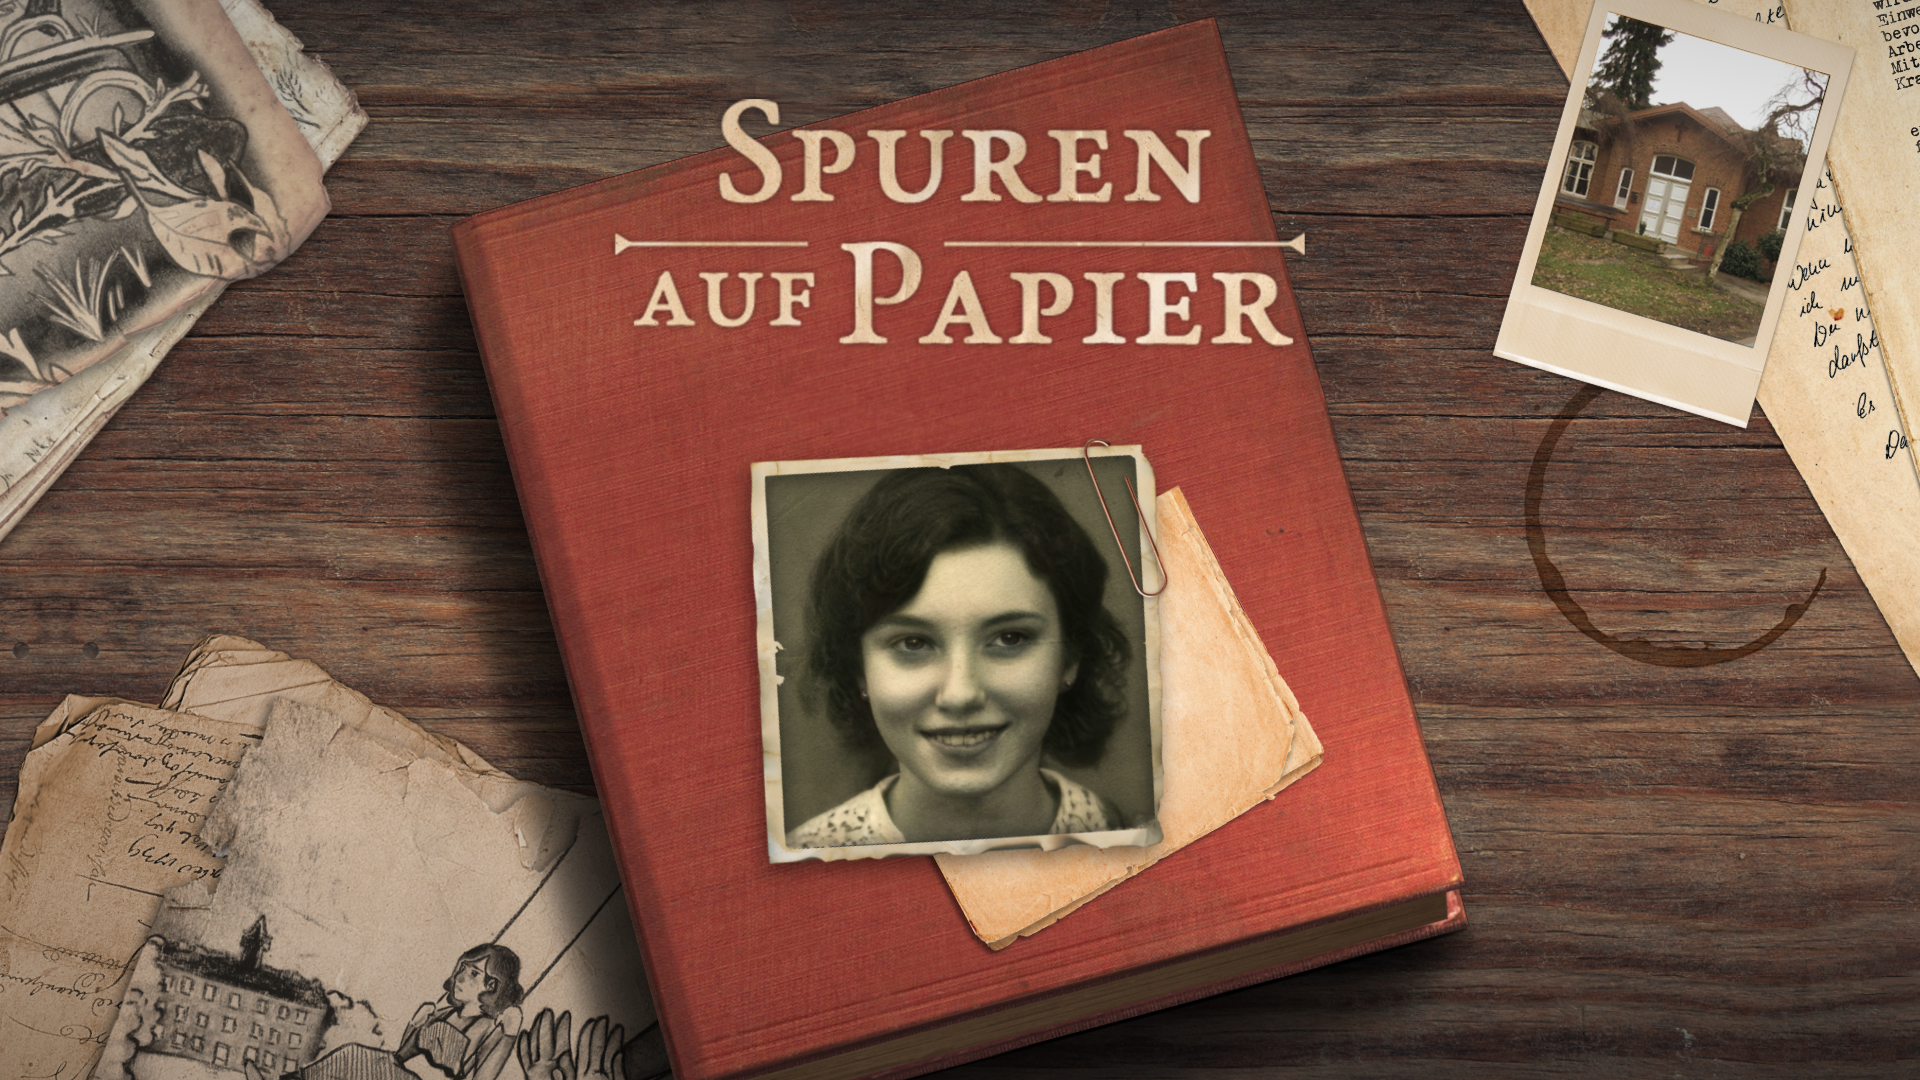 Screenshot aus dem Spiel "Spuren auf Papier", einem Spiel über die Krankenmorde während der NS Zeit. Tisch mit Tagebuch, darauf Photo eines jungen Mädchens. Auf dem Tisch liegen Photos und Zeichnungen.